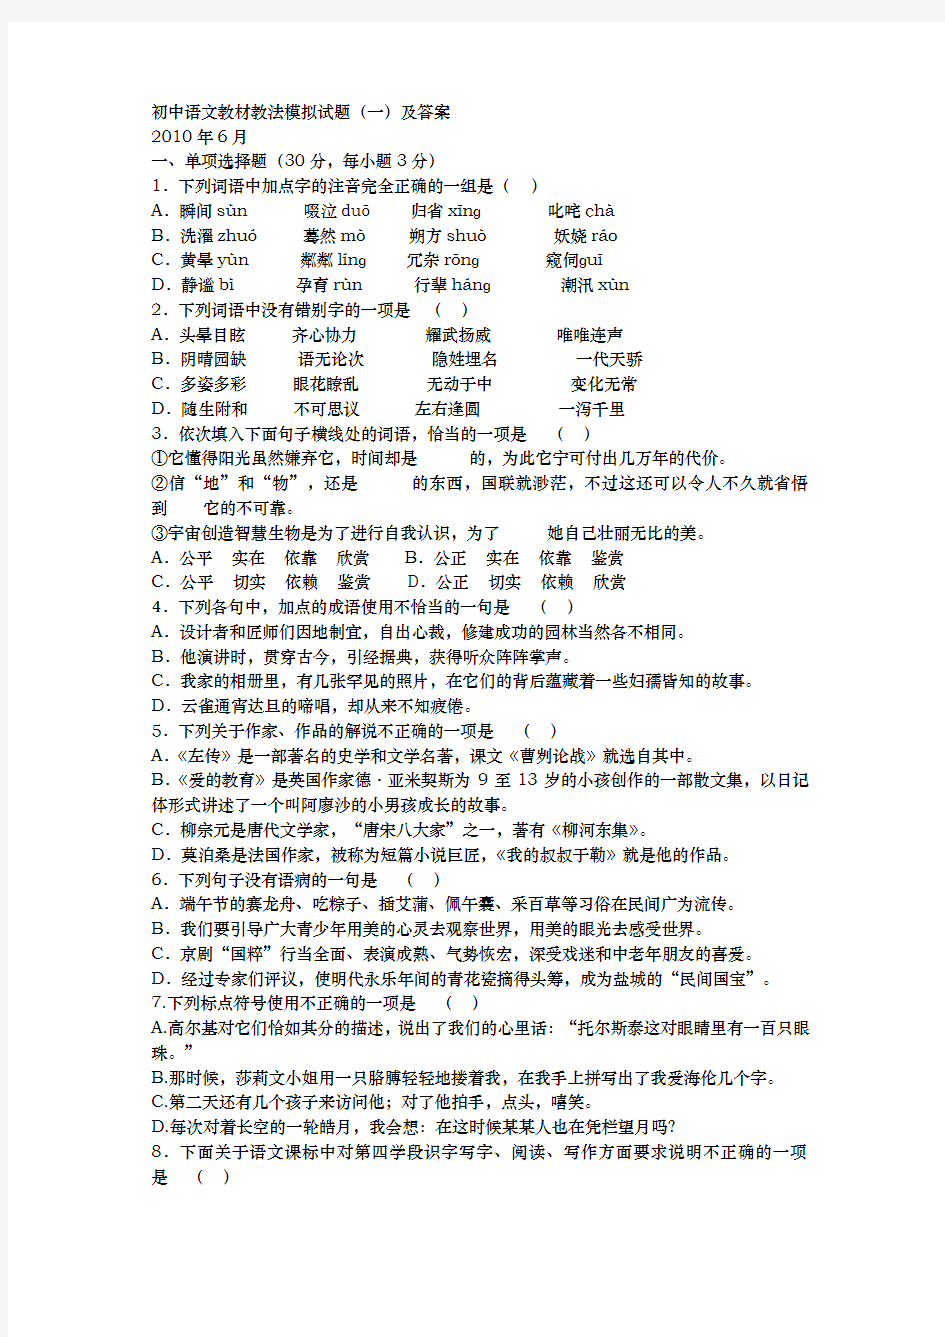 初中语文教材教法模拟试题与答案